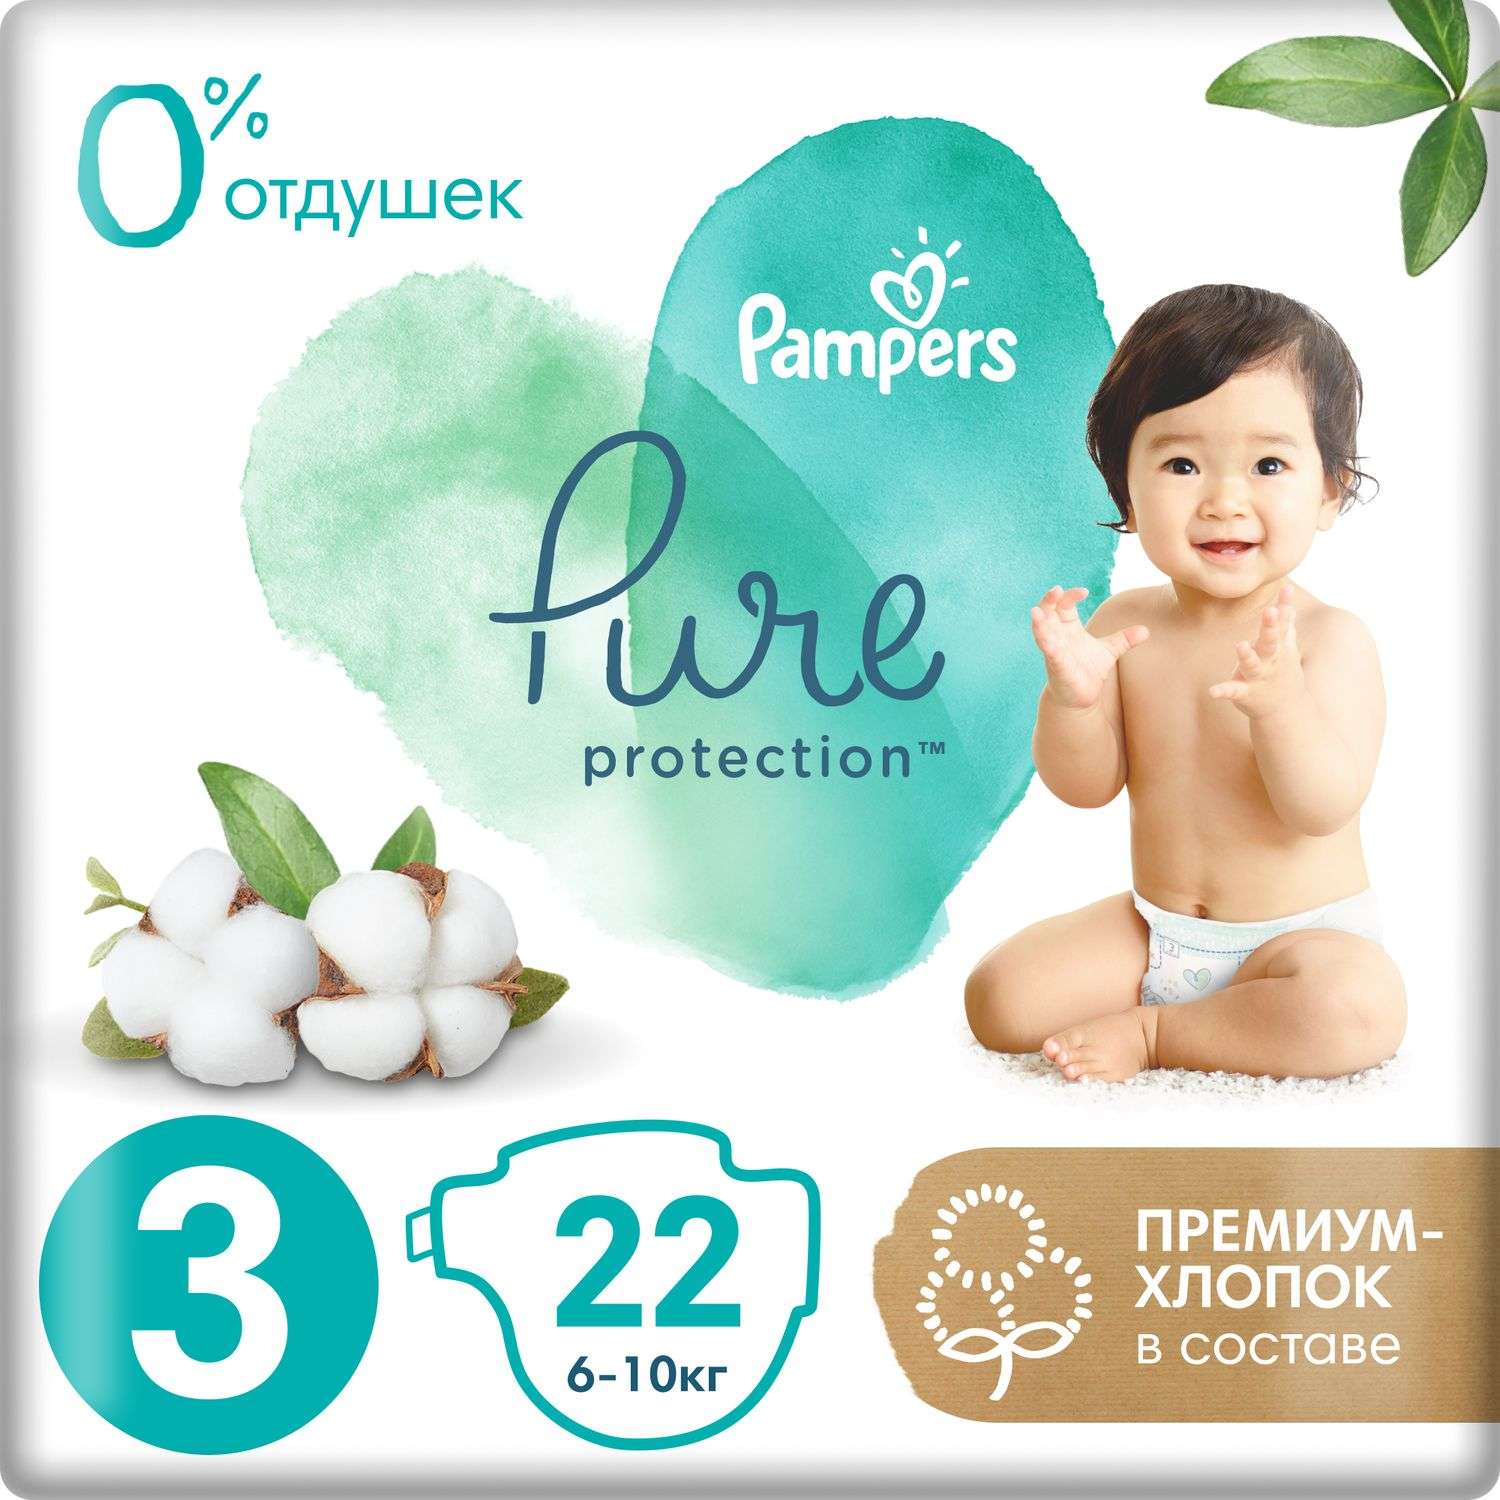 Подгузники Pampers Pure Protection 6-10кг 22шт - фото 1